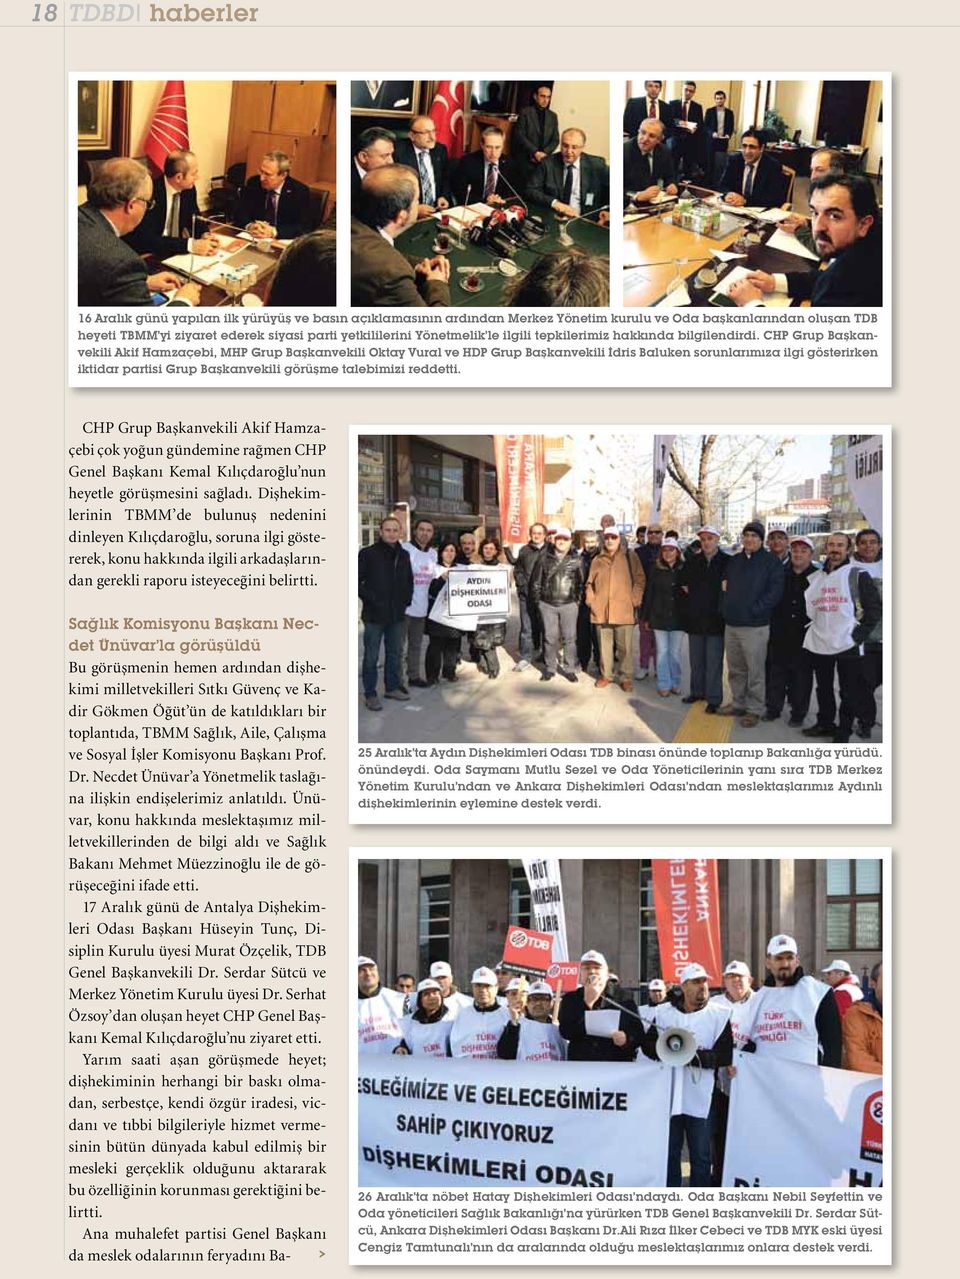 CHP Grup Başkanvekili kif Hamzaçebi, MHP Grup Başkanvekili Oktay Vural ve HDP Grup Başkanvekili İdris Baluken sorunlarımıza ilgi gösterirken iktidar partisi Grup Başkanvekili görüşme talebimizi